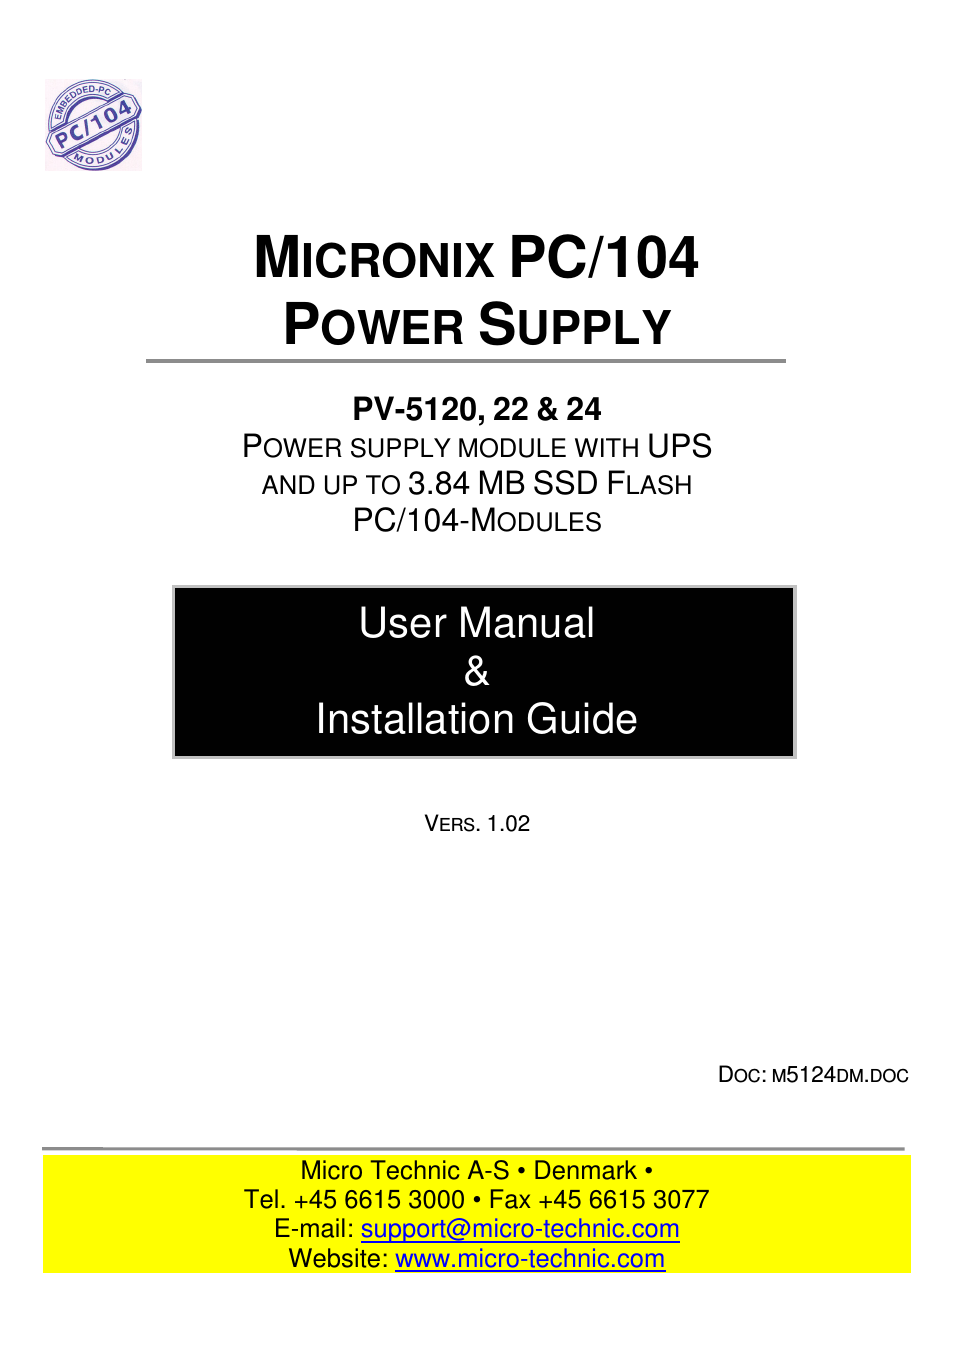 MICRONIX PC/104 PV-5124